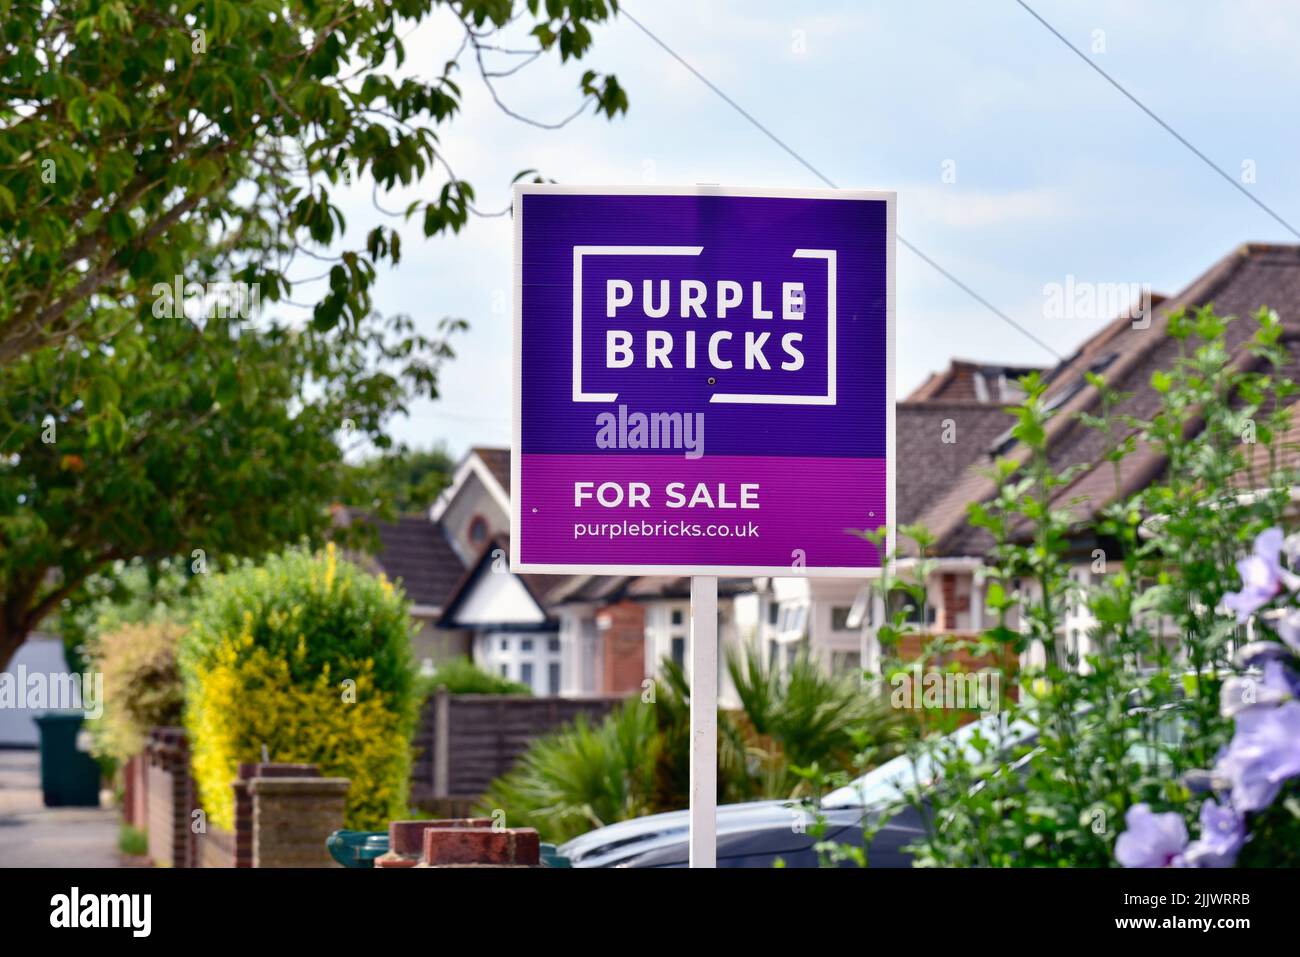 A 'Purple Bricks' agentes inmobiliarios en línea firman fuera de una casa suburbana en Shepperton Surrey Reino Unido Foto de stock